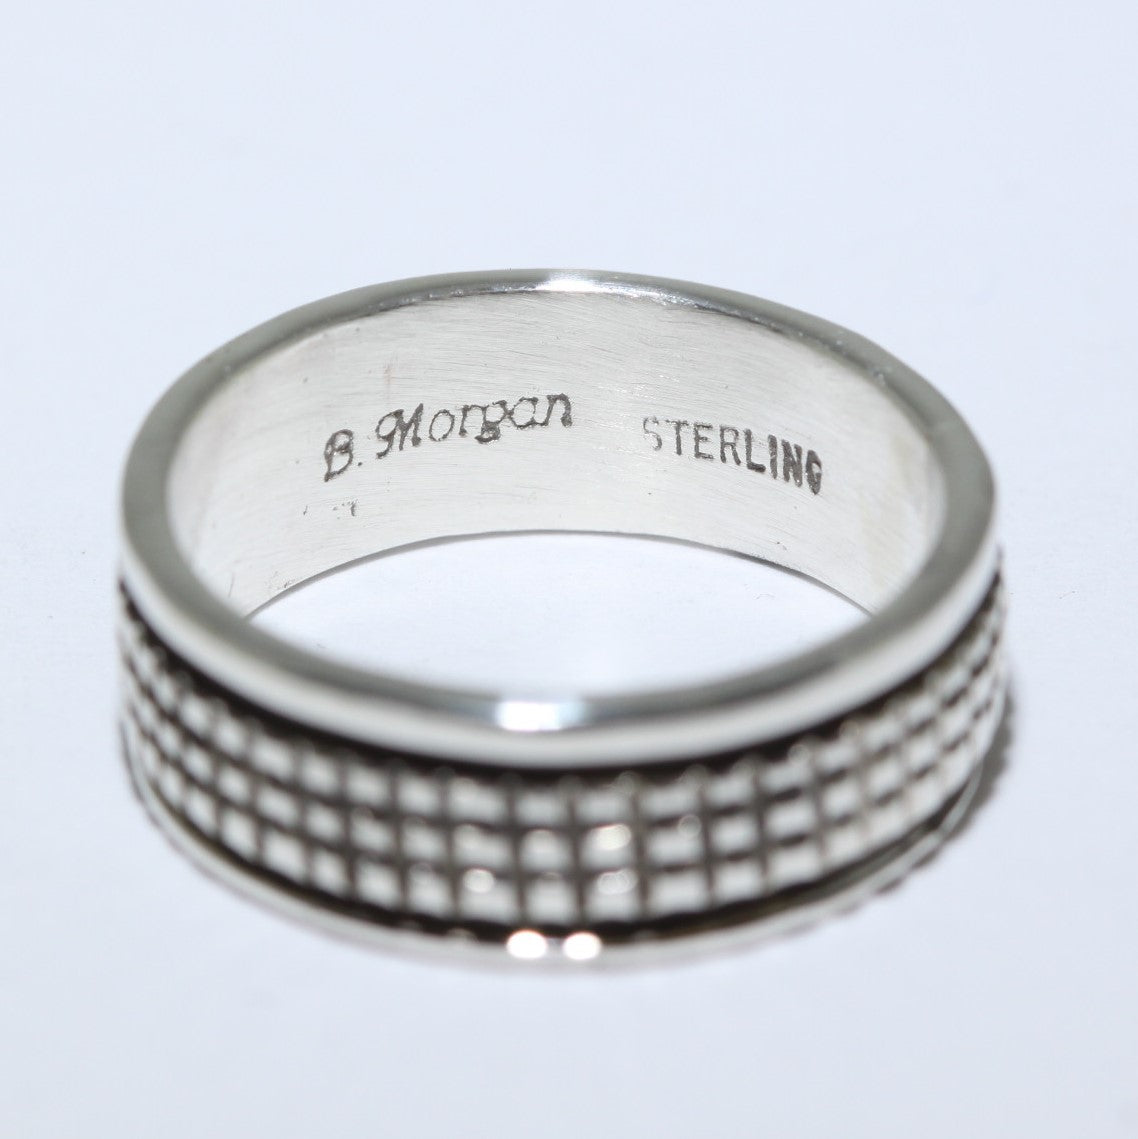 Nhẫn Bạc của Bruce Morgan